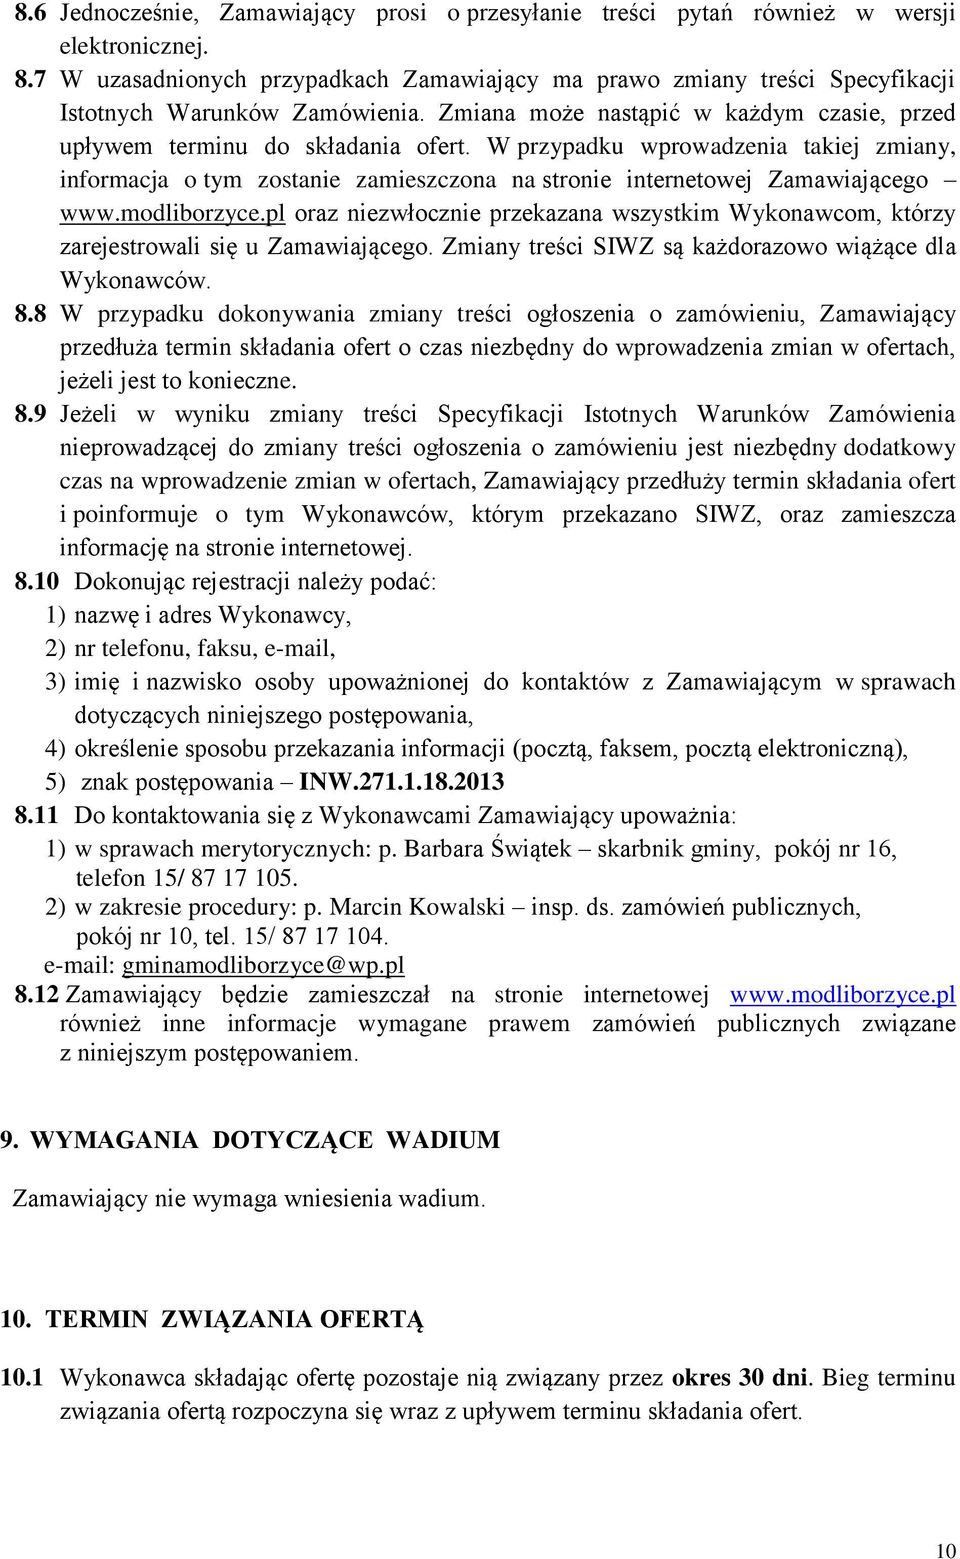 W przypadku wprowadzenia takiej zmiany, informacja o tym zostanie zamieszczona na stronie internetowej Zamawiającego www.modliborzyce.